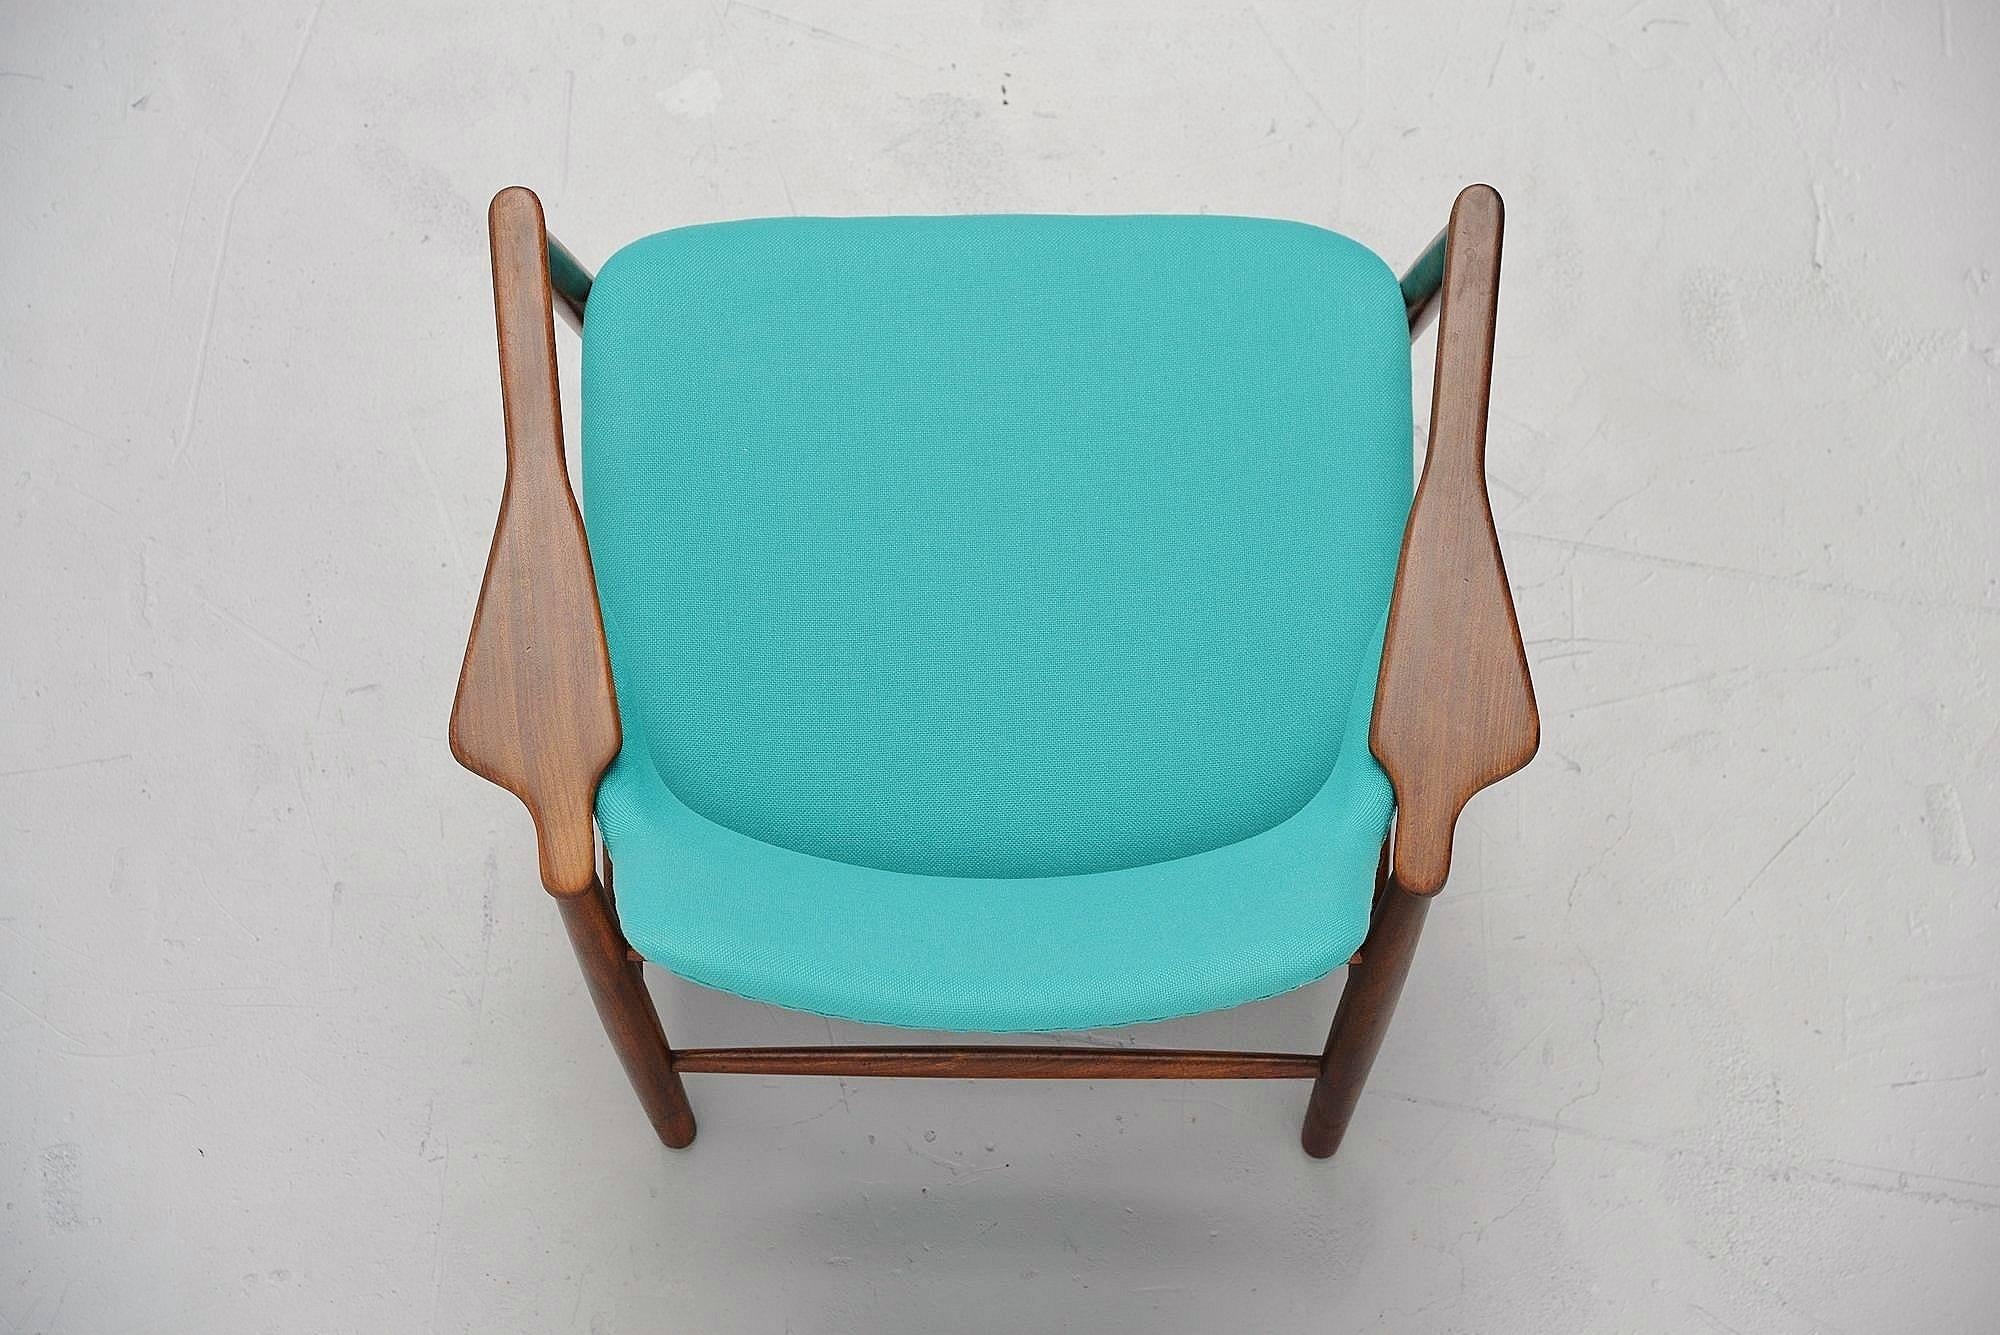 Teak Ib Kofod-Larsen Easy Chair by Christensen & Larsen, Denmark, 1953